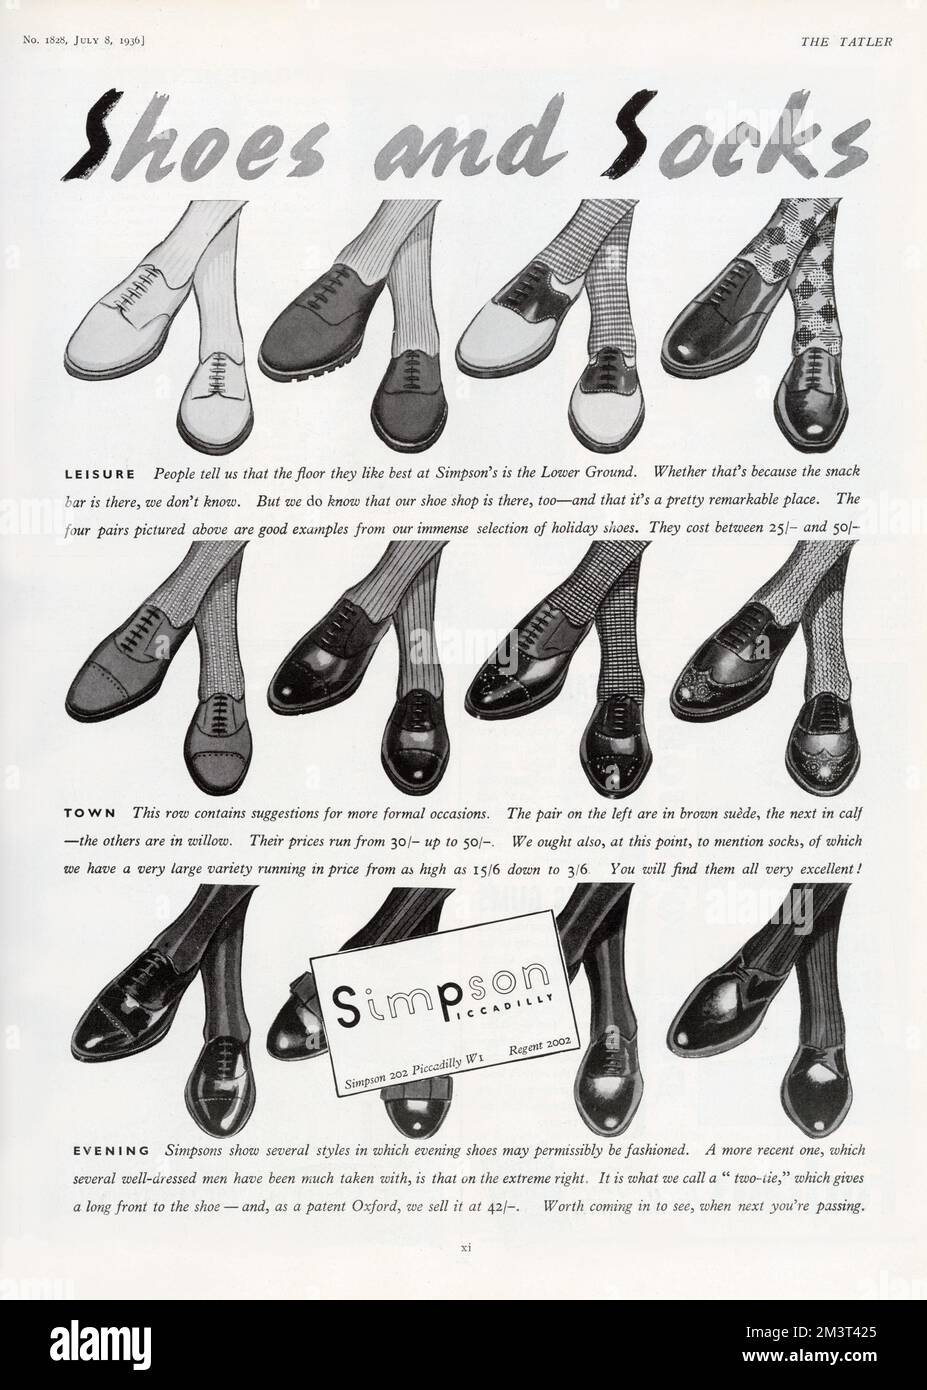 Eine feine Auswahl an Schuhen und Socken für Männer für Freizeit, Stadt und Abendkleidung, erhältlich von dem Schlichter des klassischen männlichen Stils, Simpson of Piccadilly (jetzt Waterstone's). Stockfoto